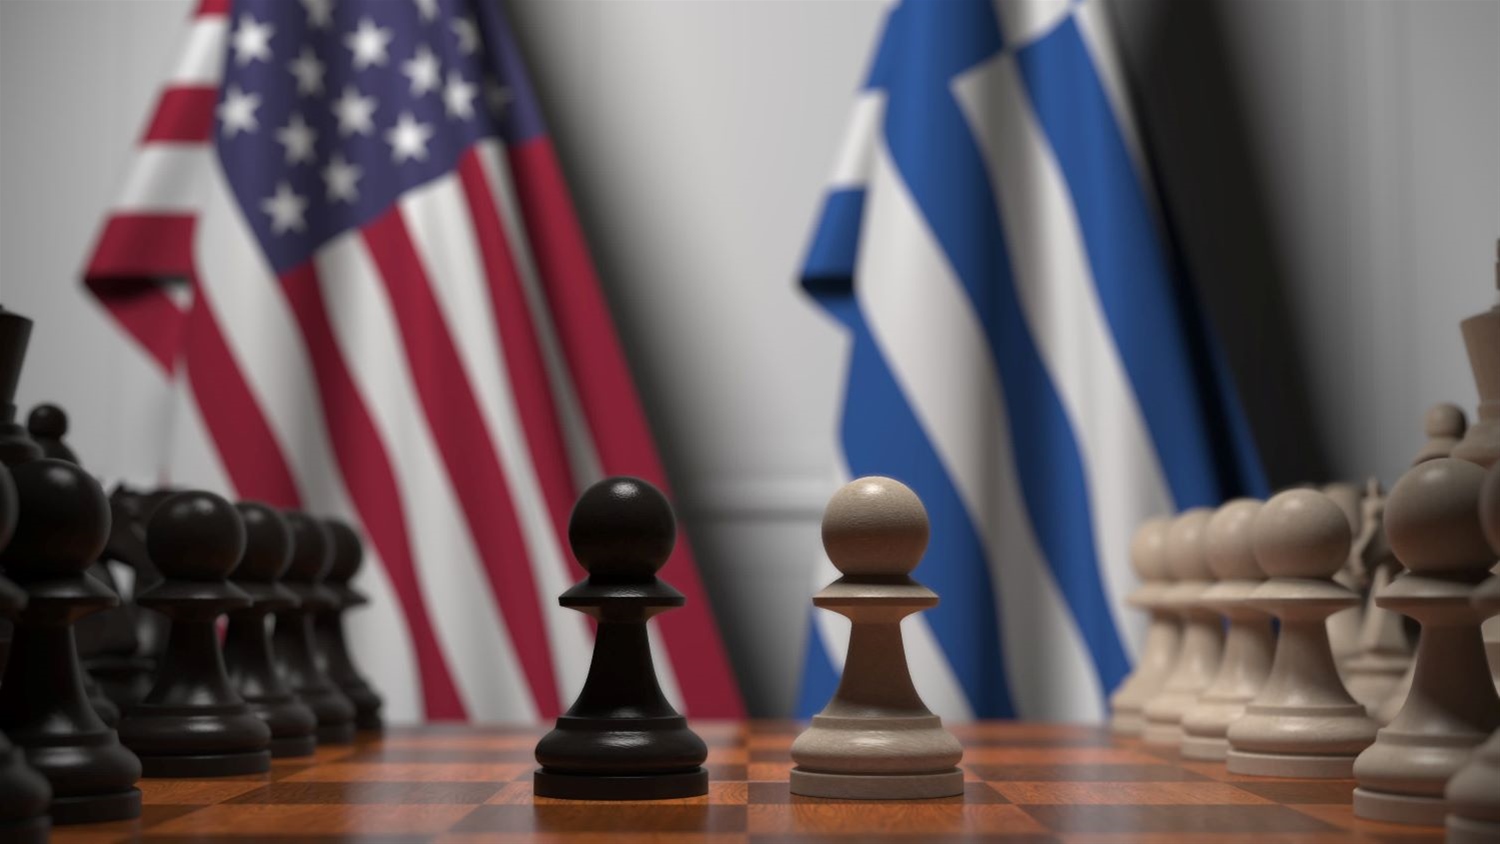 Ποια η επόμενη μέρα των σχέσεων Ελλάδας - ΗΠΑ;